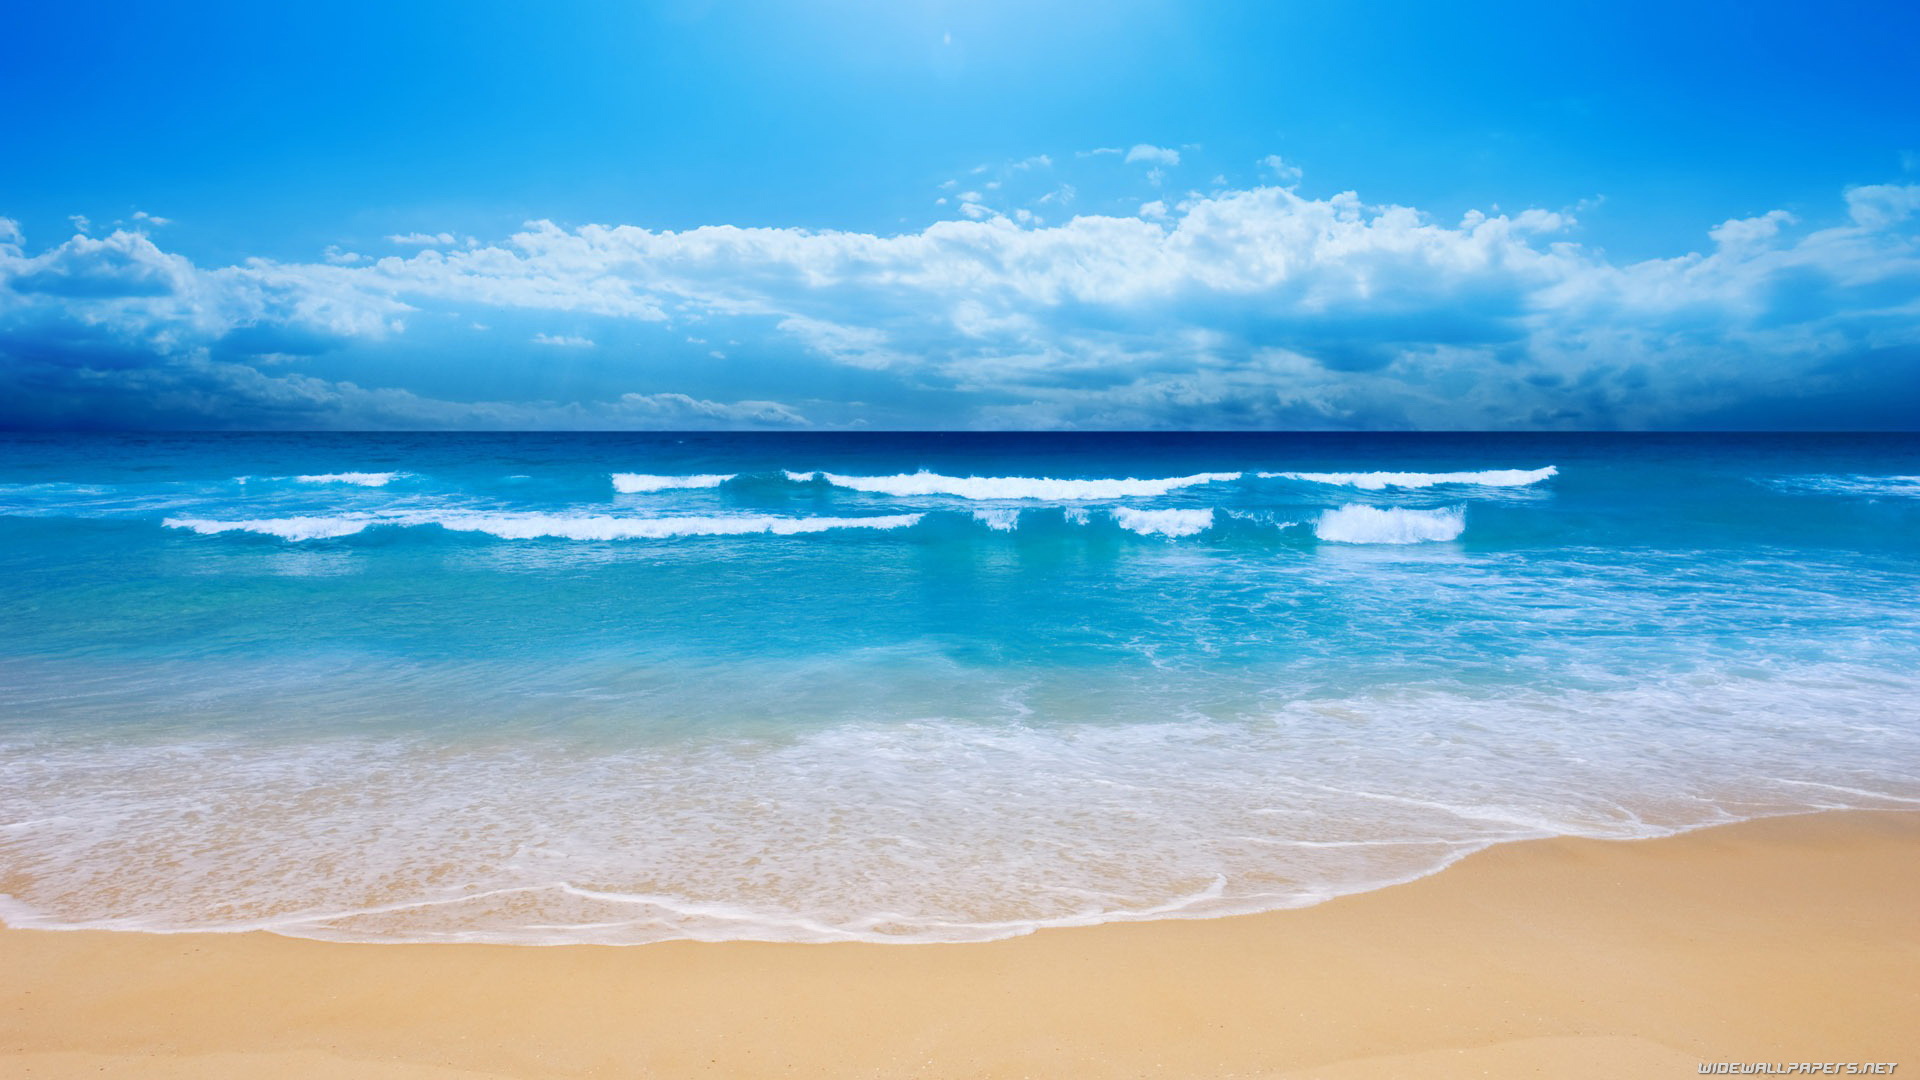 Hình nền bãi biển đẹp làm cho bạn cảm thấy như đang đứng ngay trên bãi biển. Với cát trắng, nước biển trong xanh và những địa hình đa dạng, hình ảnh bạn chọn sẽ làm cho bạn muốn đi du lịch ngay lập tức. 